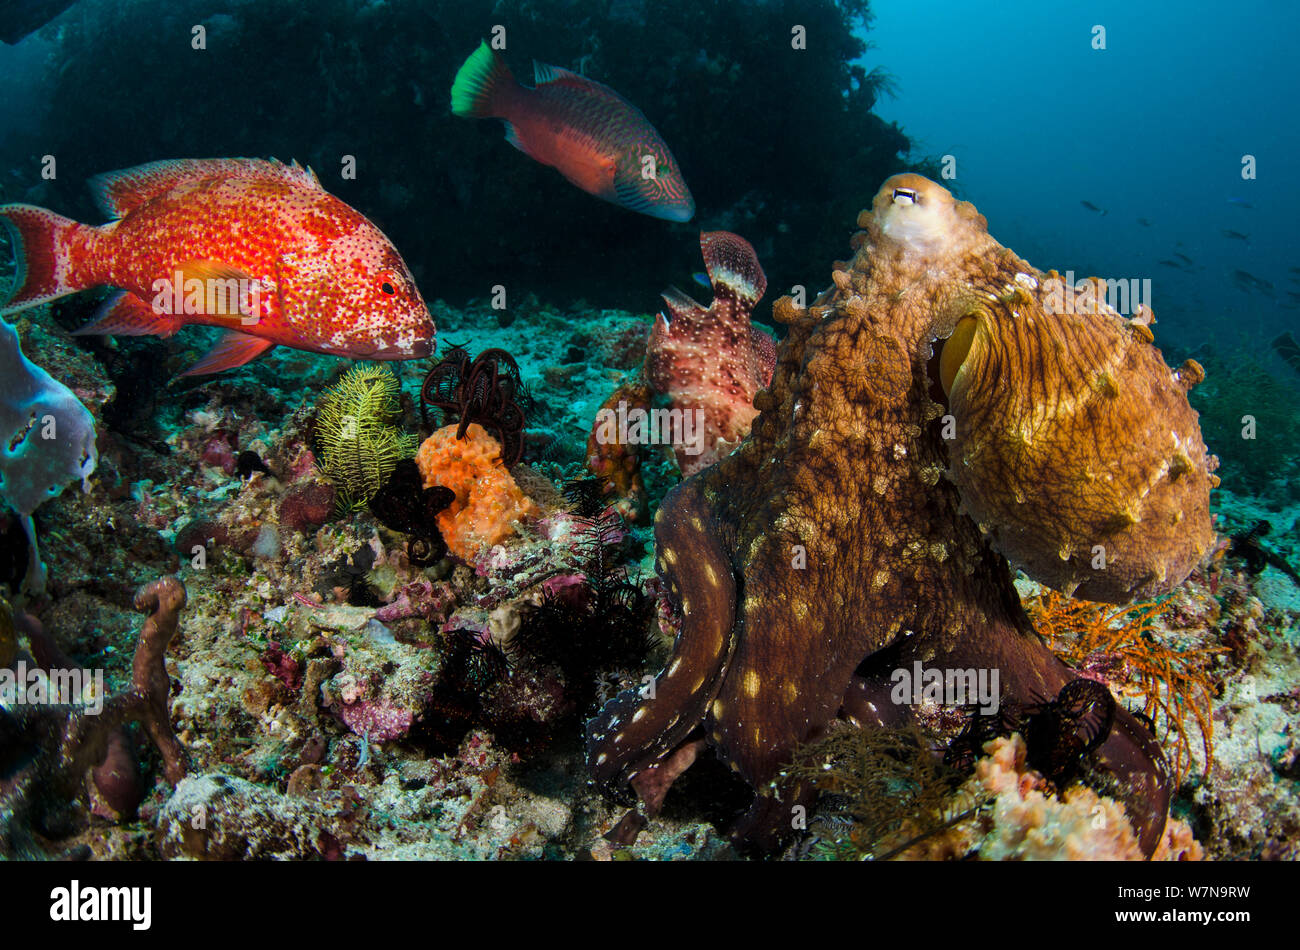 Eine gemeinsame reef Krake (Octopus cyanea) Nahrungssuche zieht mehrere große Rifffische, in der Hoffnung, eine einfache Mahlzeit zu bekommen. Kraken können versuchen, die Fische mit ihren Waffen zu schlagen, um sie weg zu erschrecken. Cannibal Rock, Sawu Sea, Rinca, Komodo National Park, Indonesia. Stockfoto